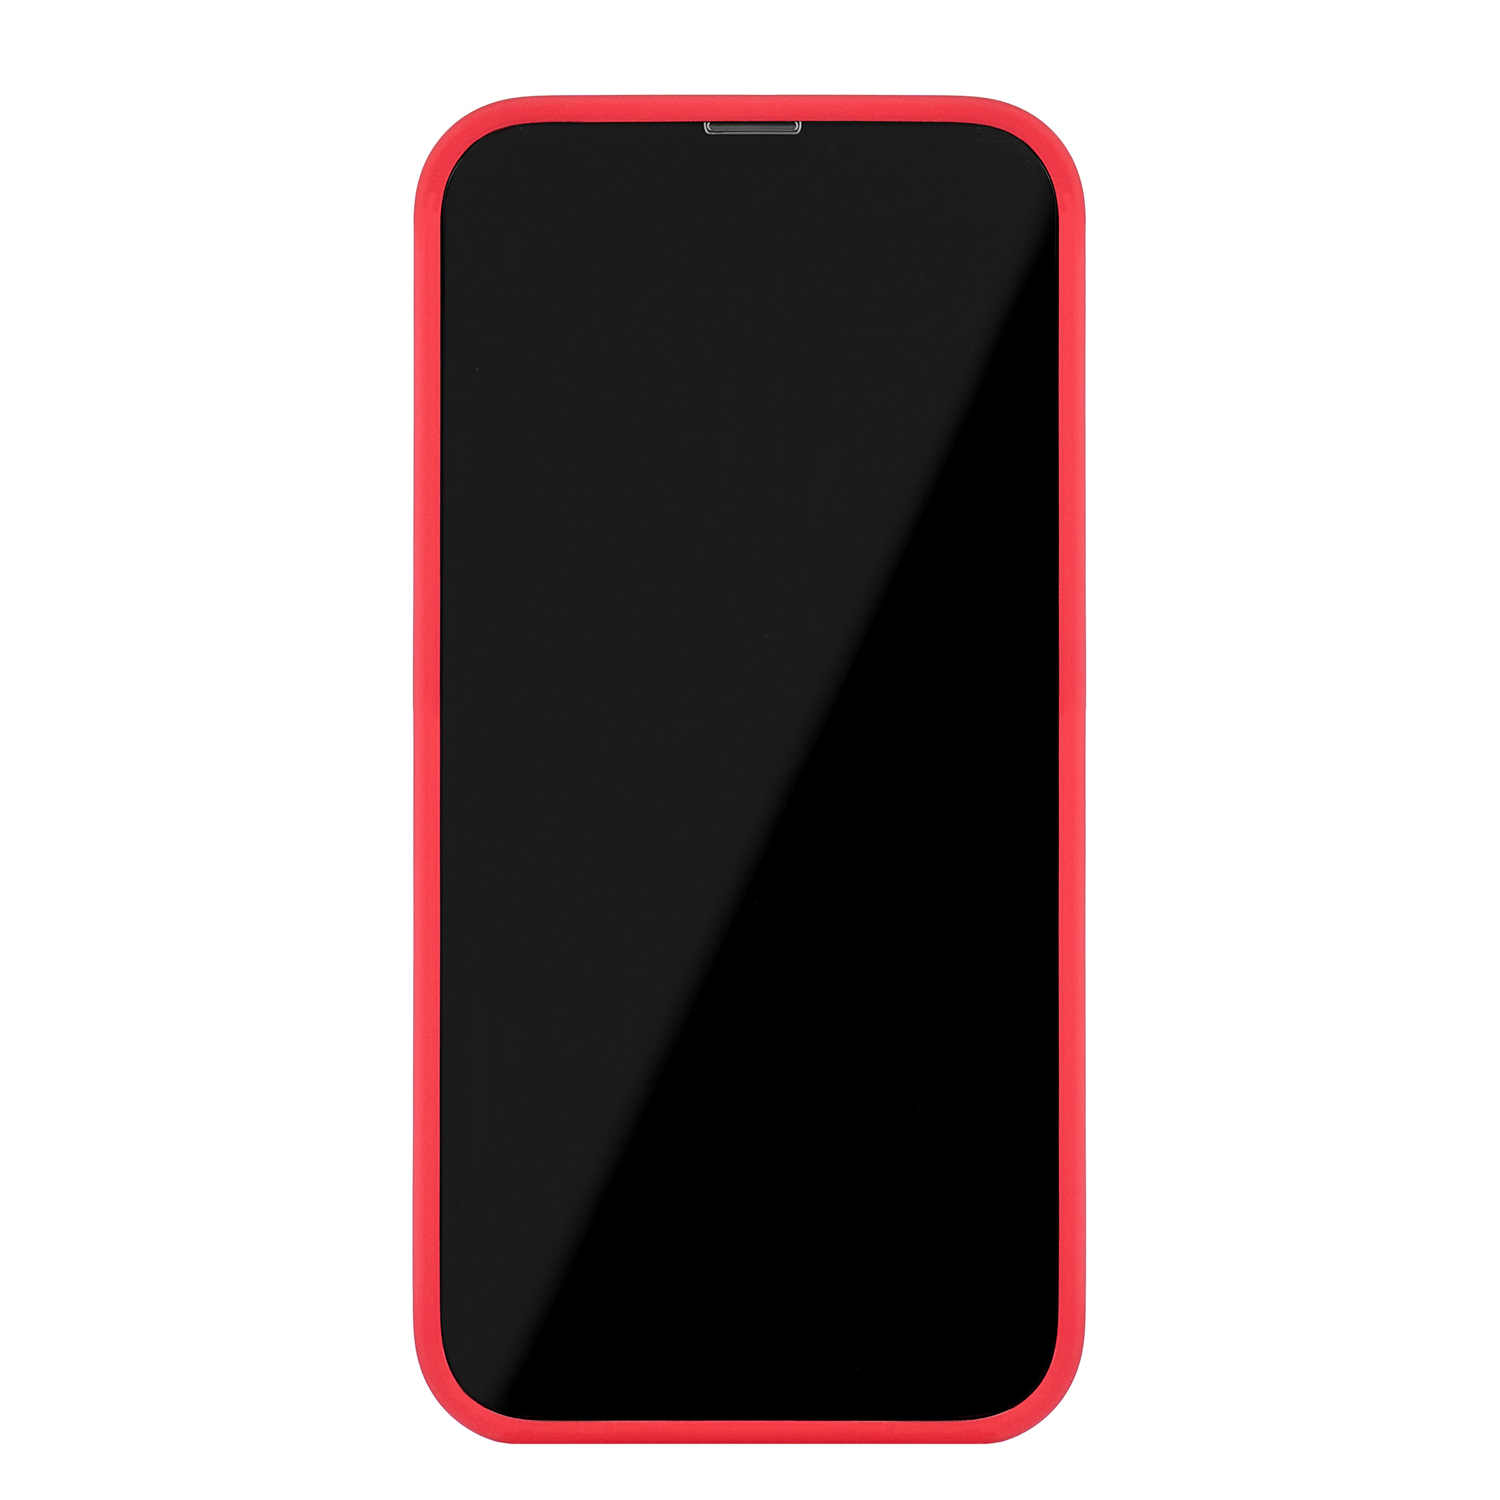 Чехол защитный uBear Touch Case для  iPhone 14 Pro Max, силикон, софт-тач, красный